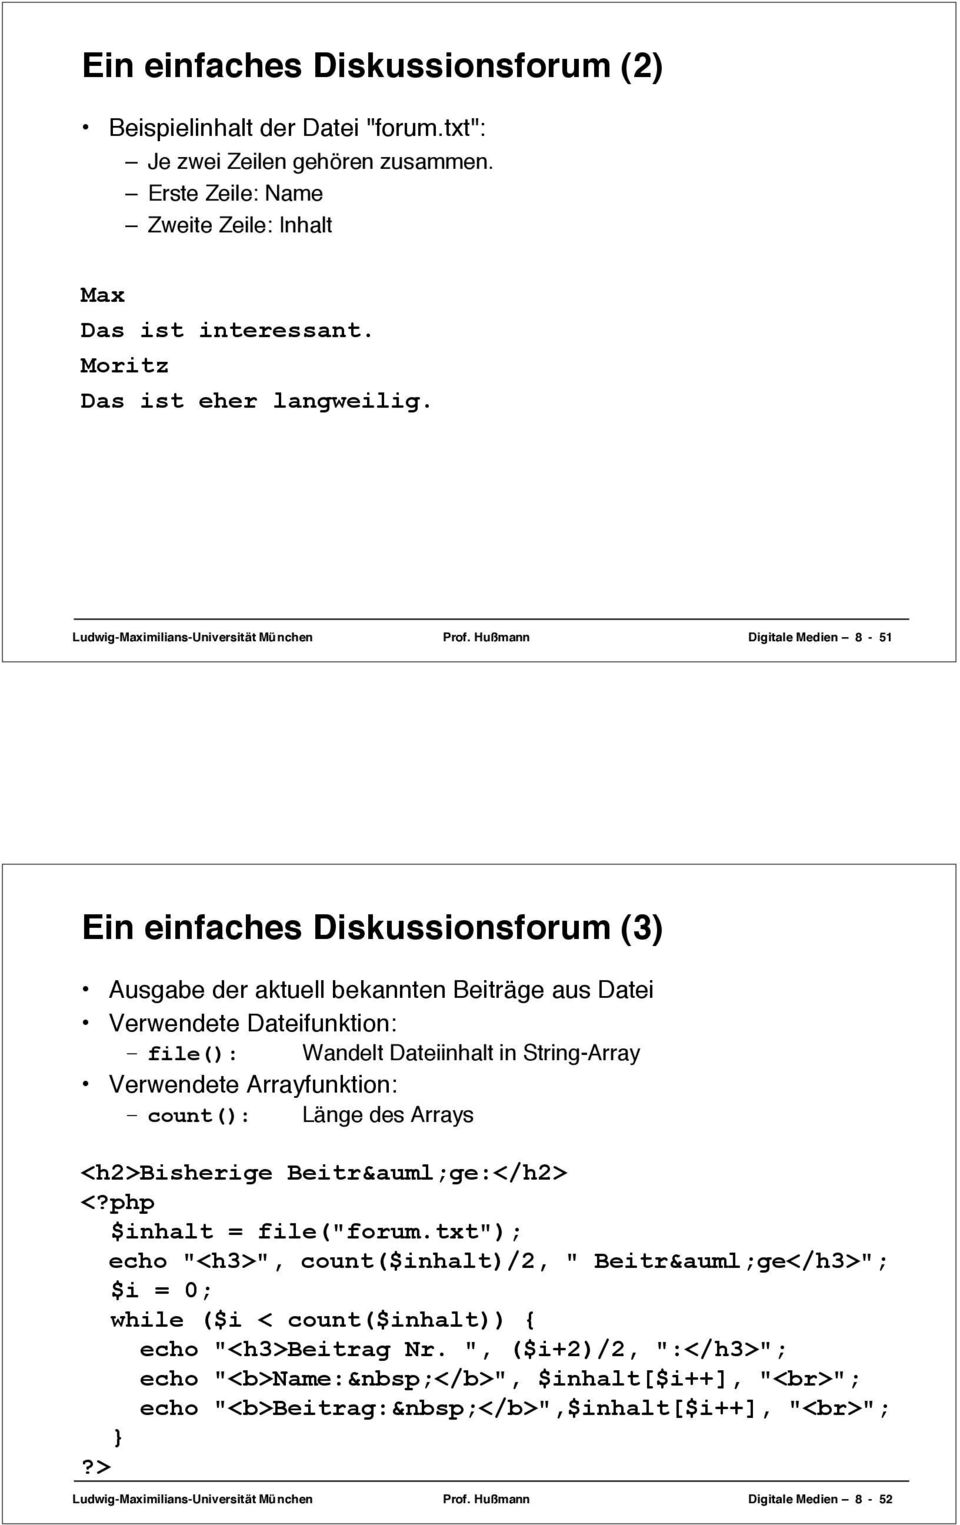 Hußmann Digitale Medien 8-51 Ein einfaches Diskussionsforum (3) Ausgabe der aktuell bekannten Beiträge aus Datei Verwendete Dateifunktion: file(): Wandelt Dateiinhalt in String-Array Verwendete